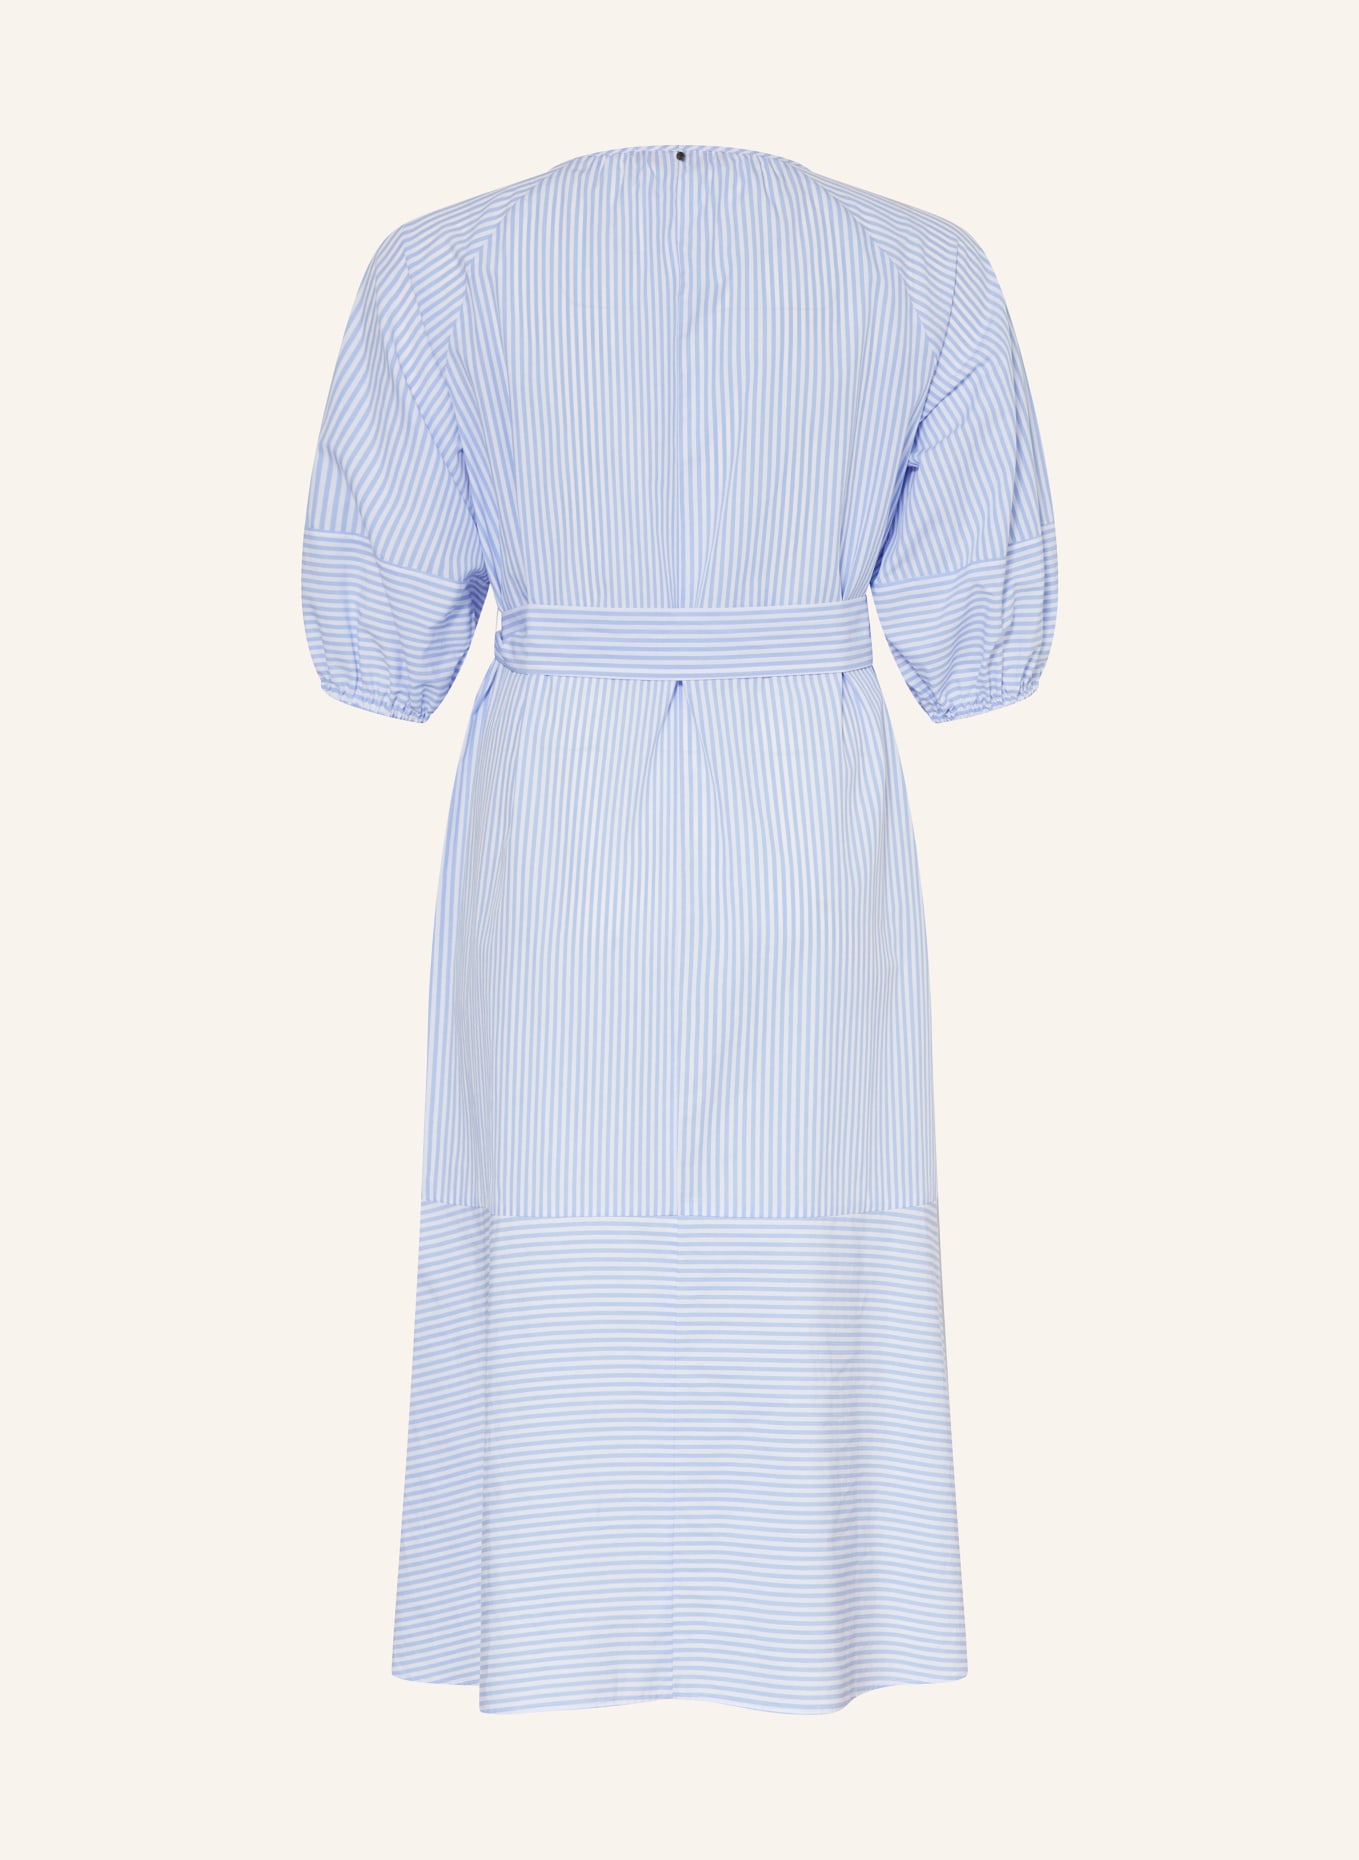 MARINA RINALDI SPORT Kleid, Farbe: WEISS/ HELLBLAU (Bild 2)